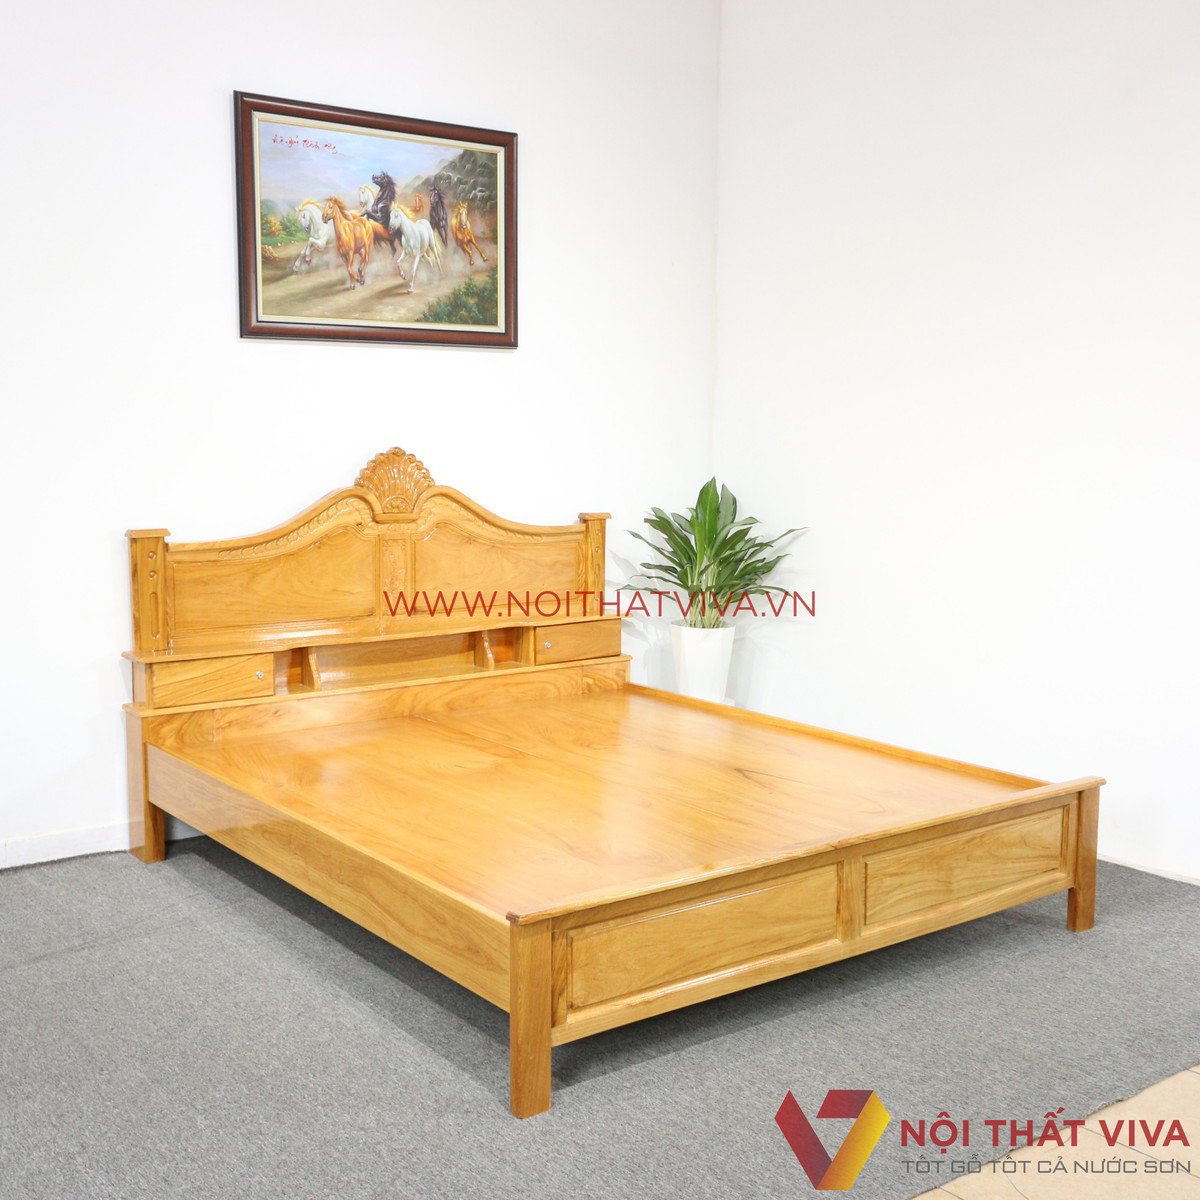 Top những mẫu giường ngủ tân cổ điển gỗ tự nhiên đang được bán chạy